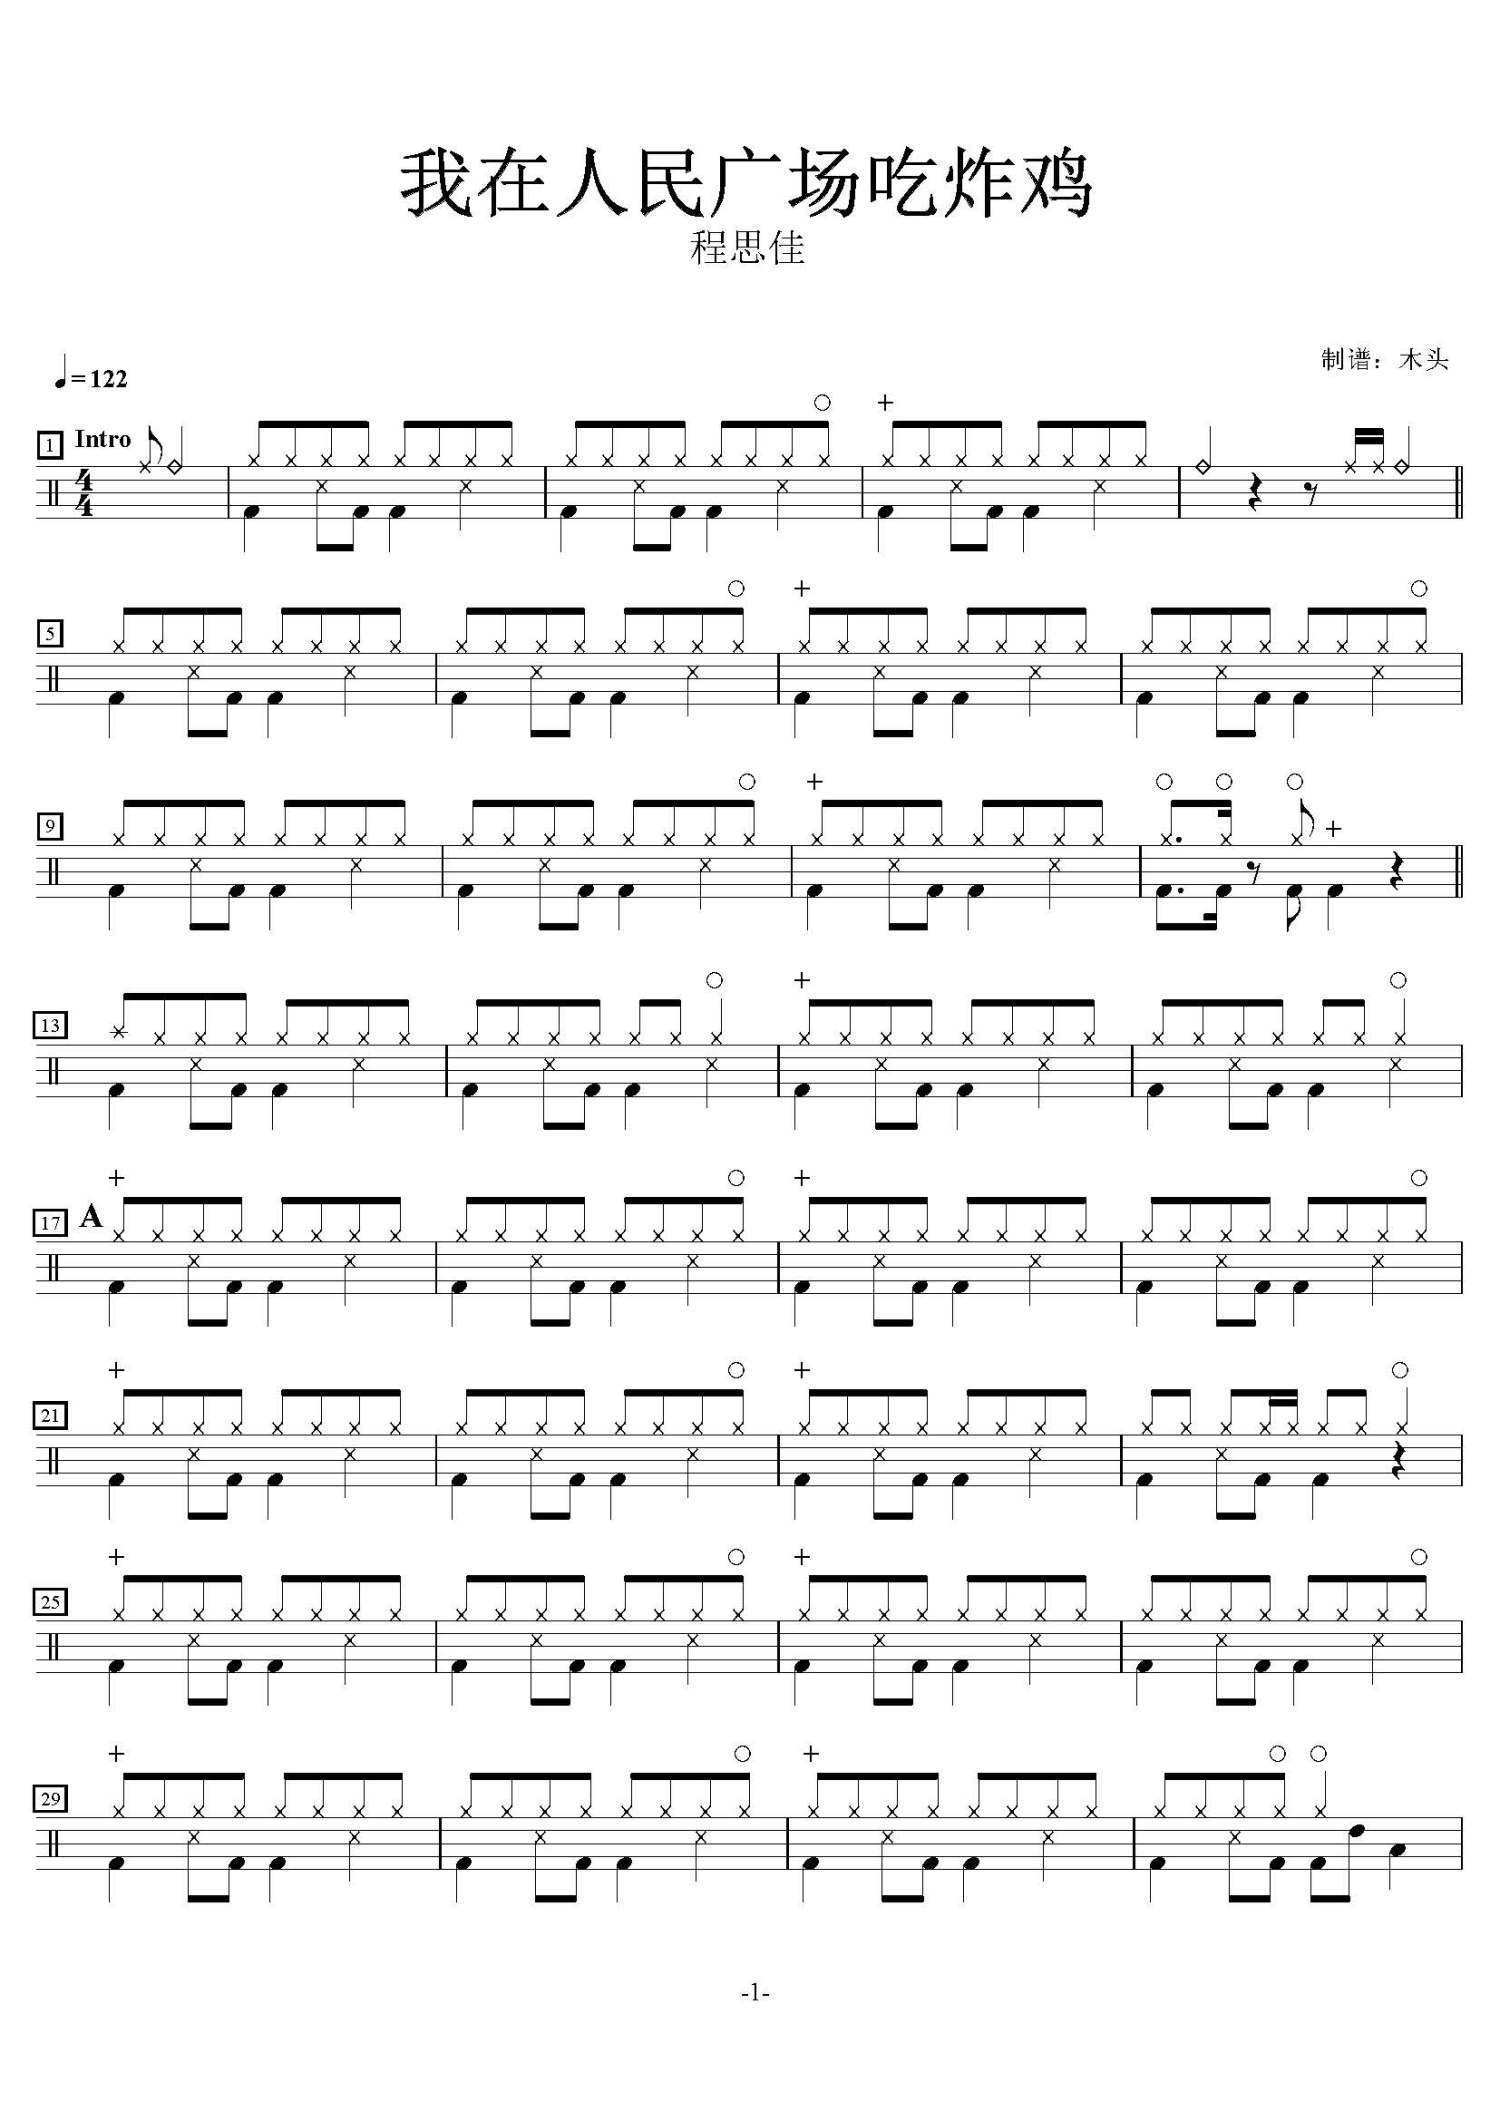 我在人民广场吃炸鸡-情圣插曲-抖音版本五线谱预览1-钢琴谱文件（五线谱、双手简谱、数字谱、Midi、PDF）免费下载